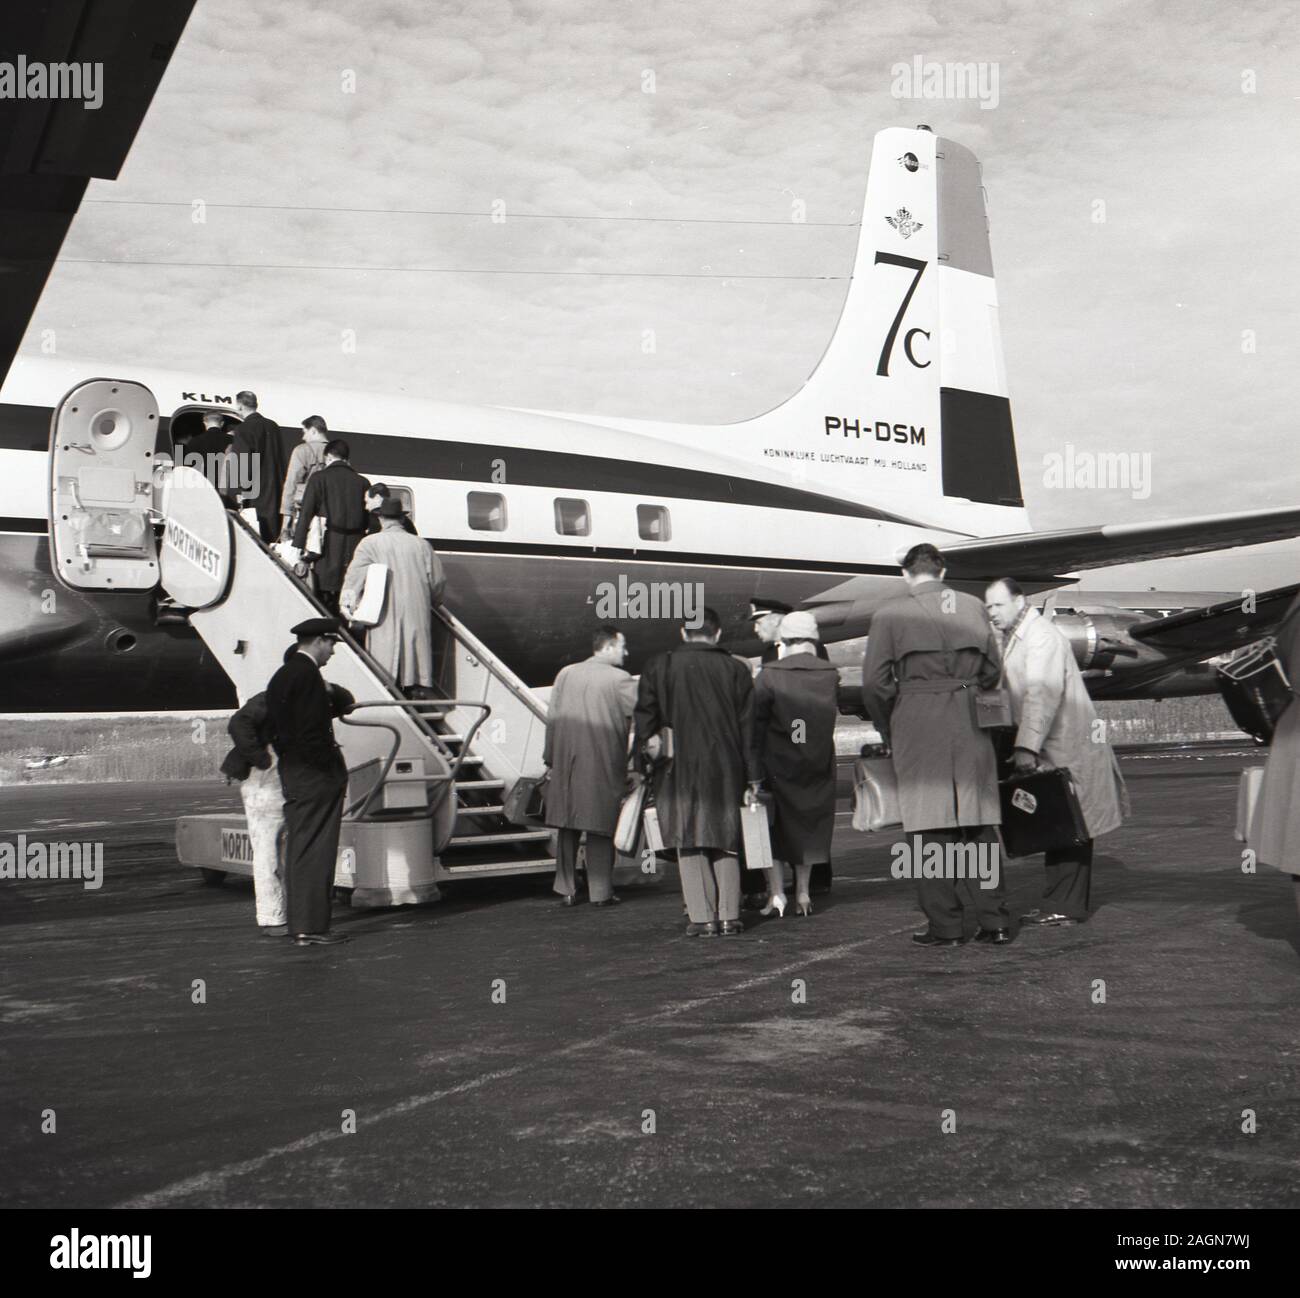 1950, historische, die Fluggäste einen KLM7c Flugzeuge, PH-DSM am Flughafen Anchorage, Anchorage, Alaska. Stockfoto